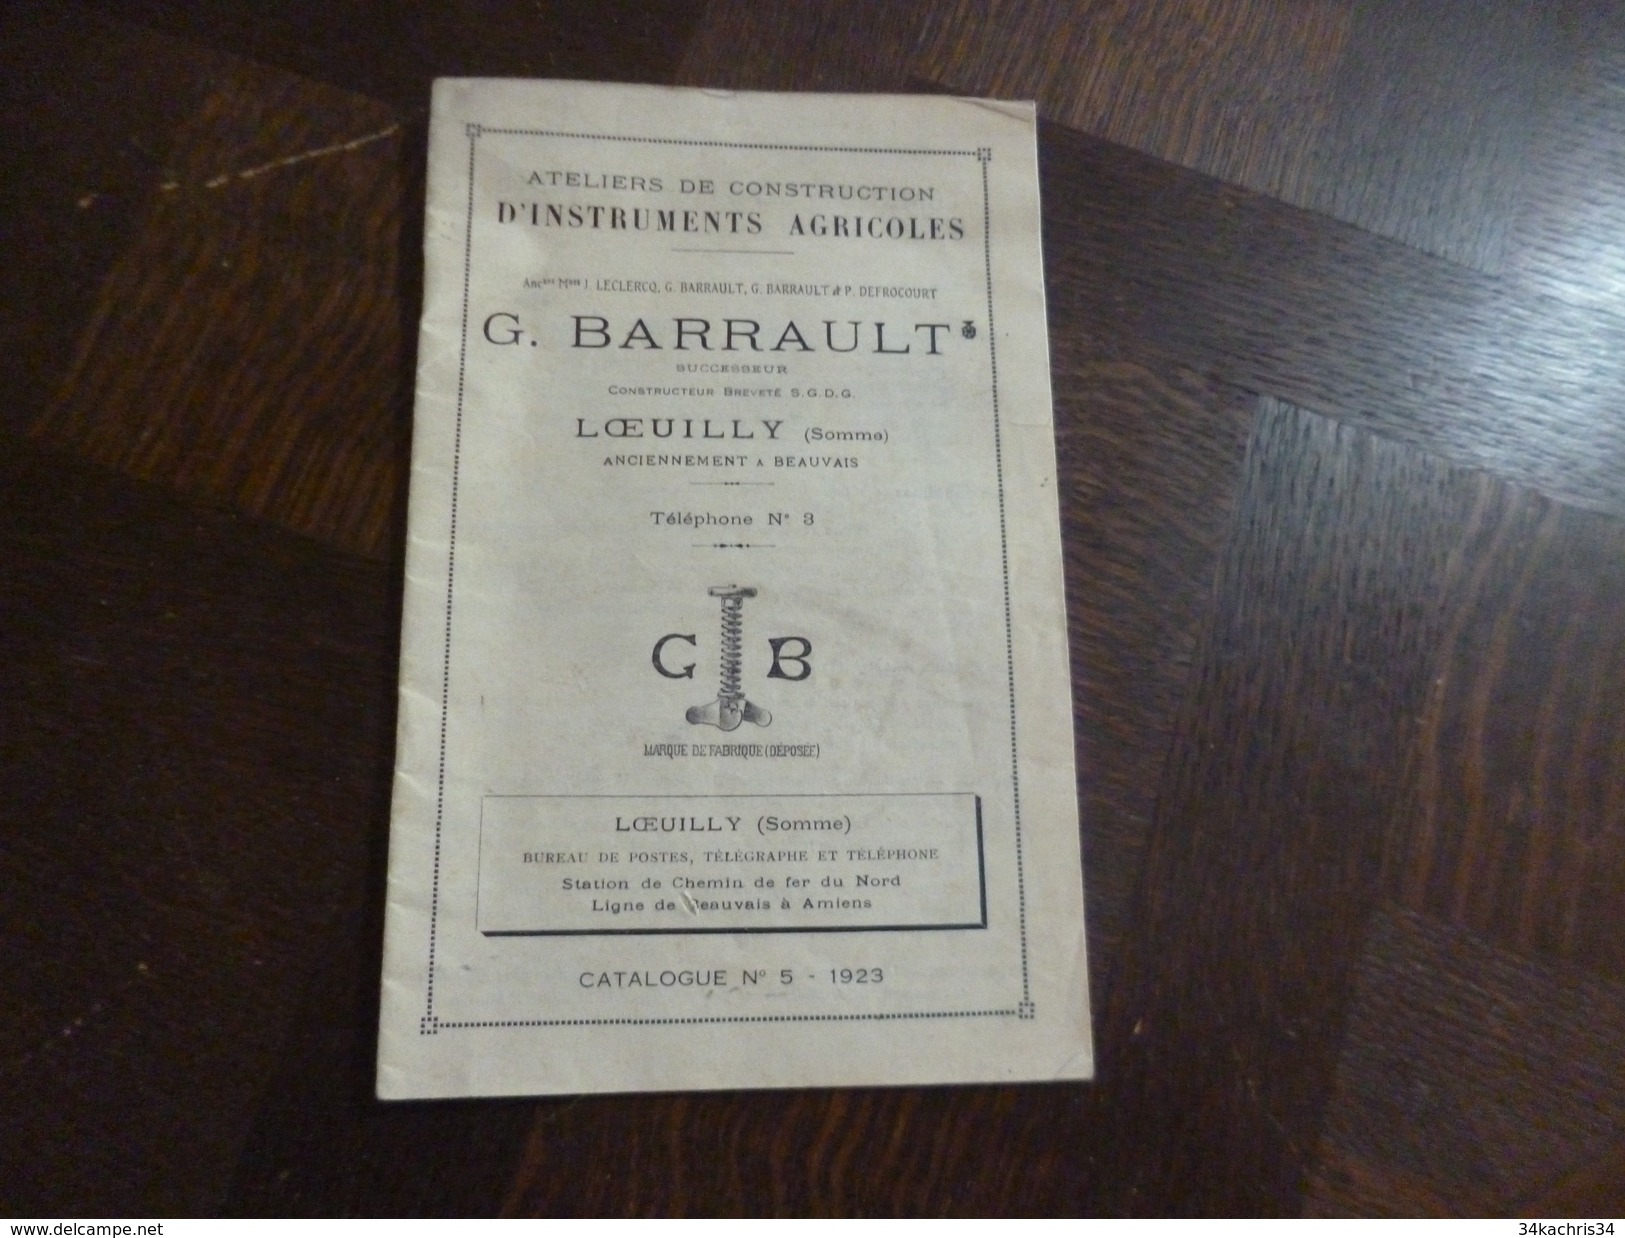 Olaquette Publicitaire Pub Tarifs Illustrée G.Barrault LOeully Somme Instruments Agricoles Agriculture 29 P - Landwirtschaft